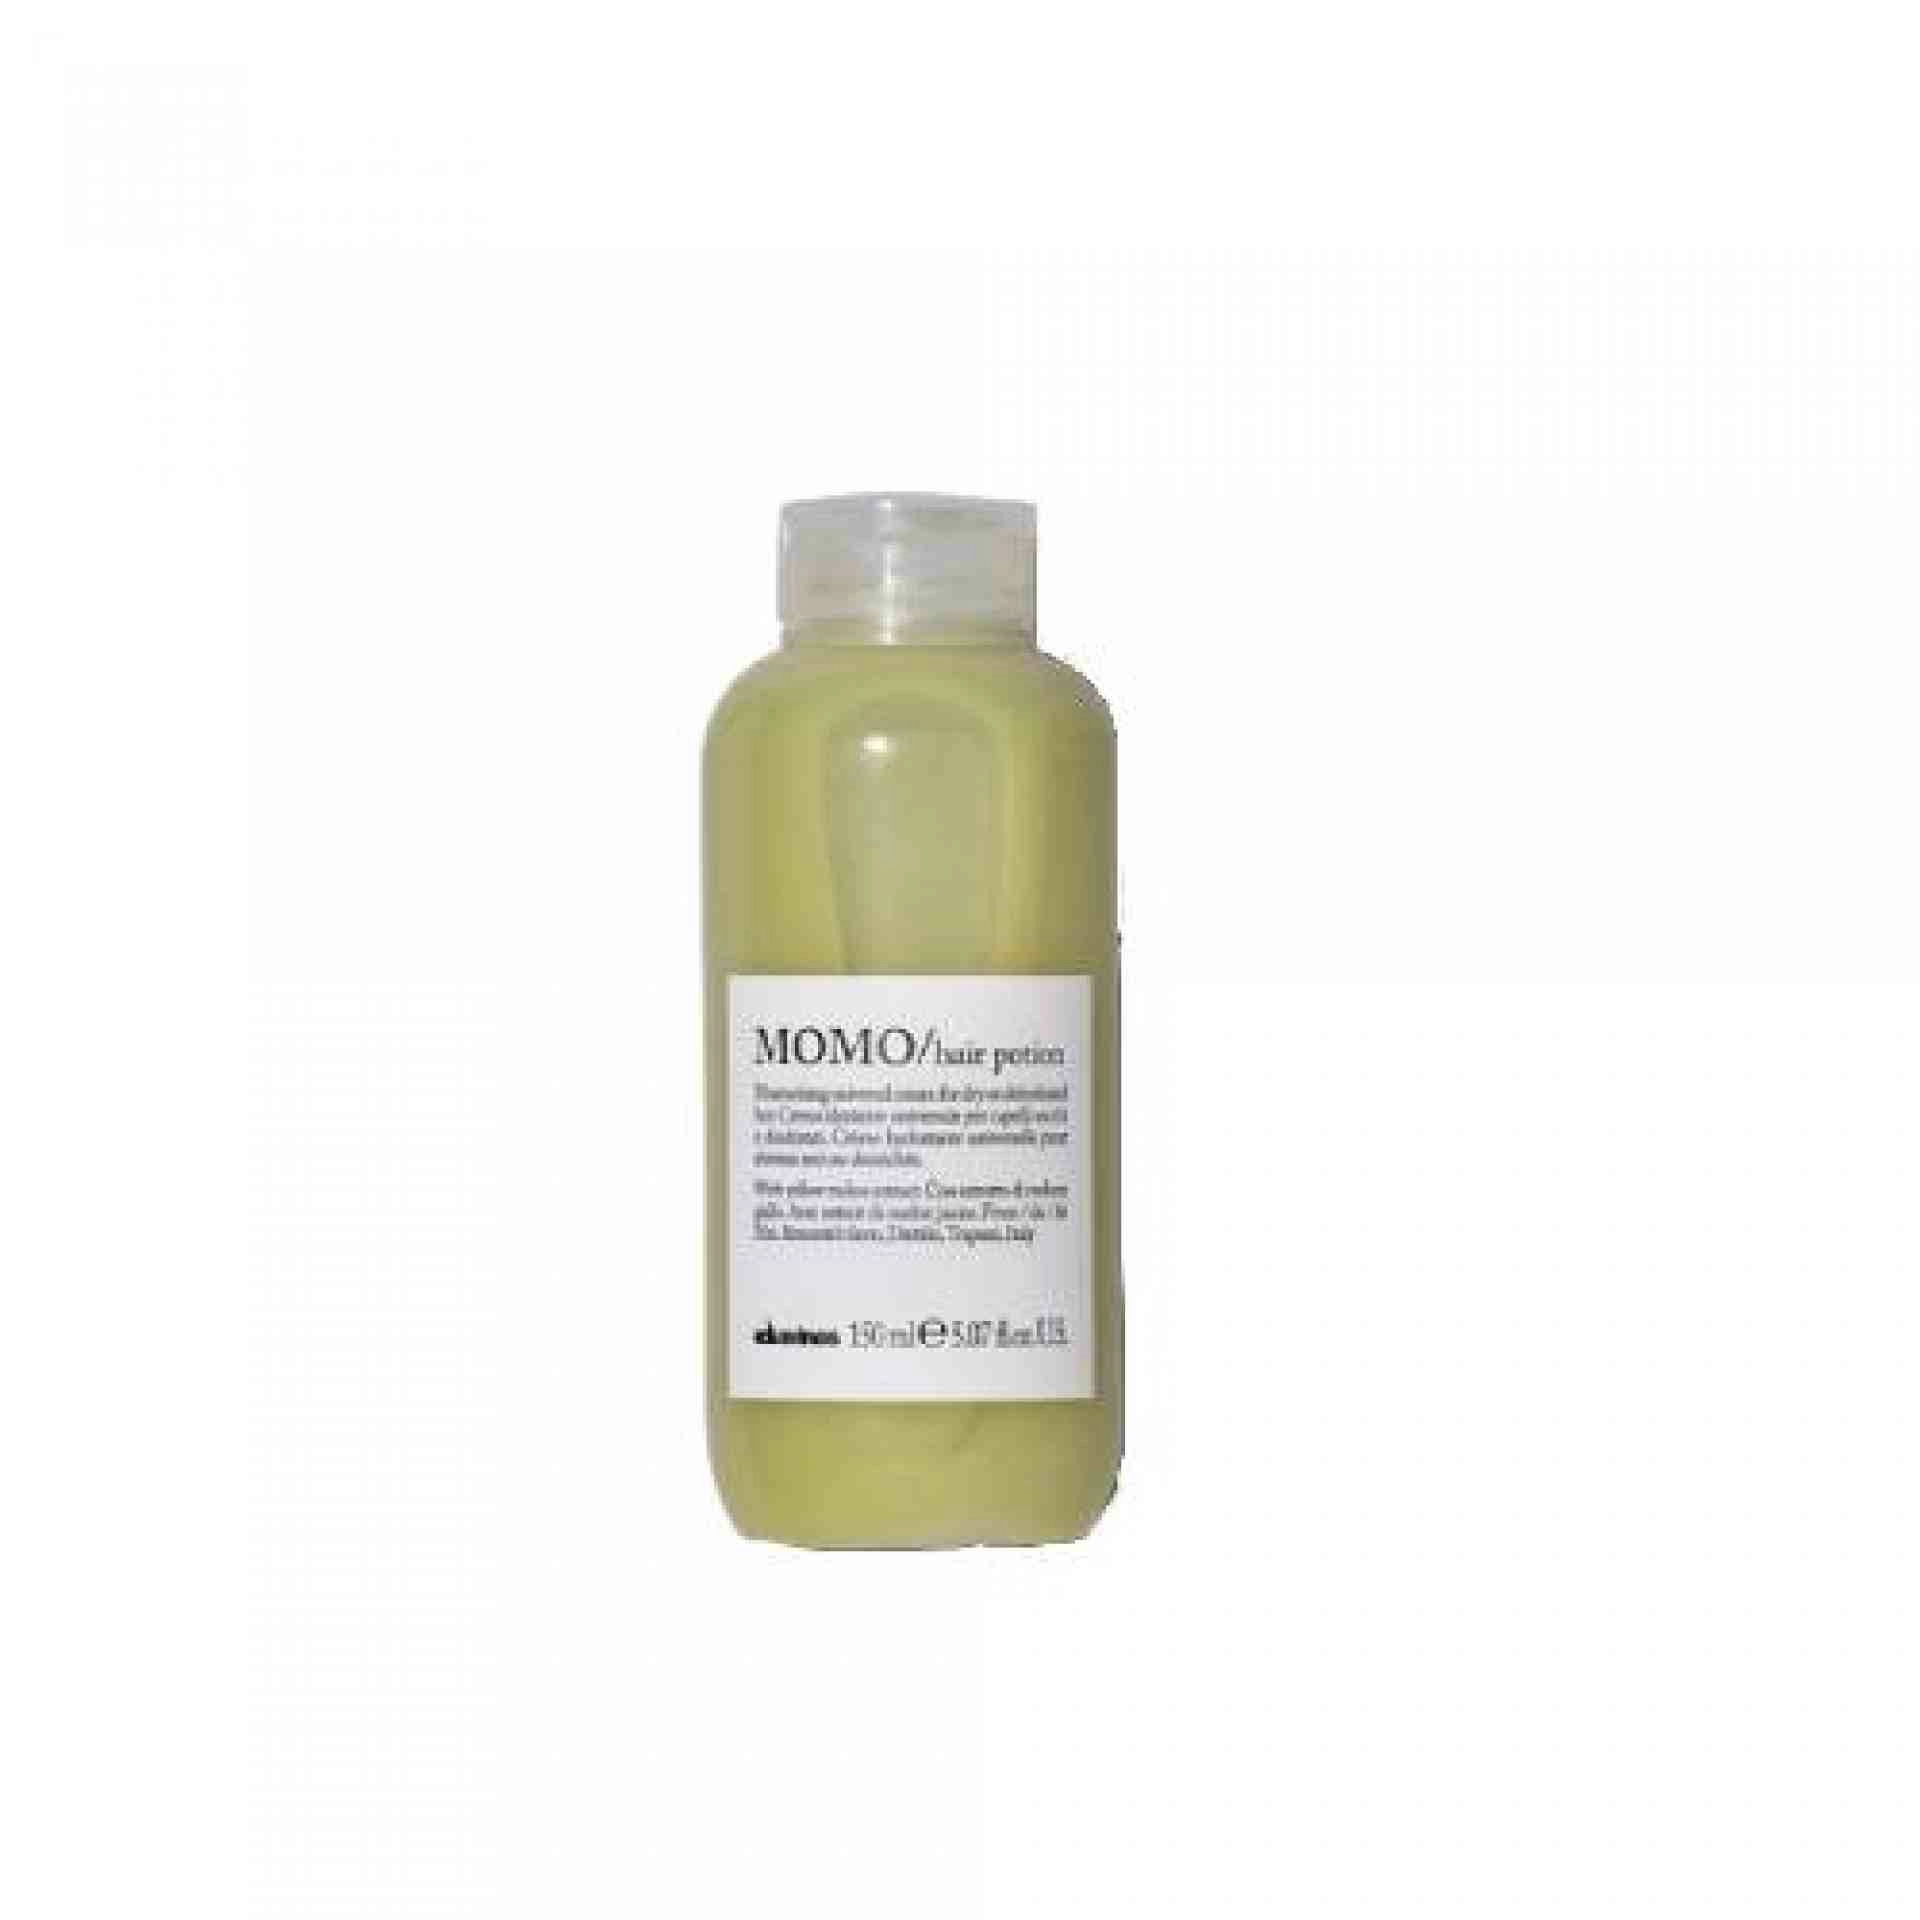 MOMO / Hair Potion | Crema hidratante para cabello 150ml - Essential Haircare - Davines ®